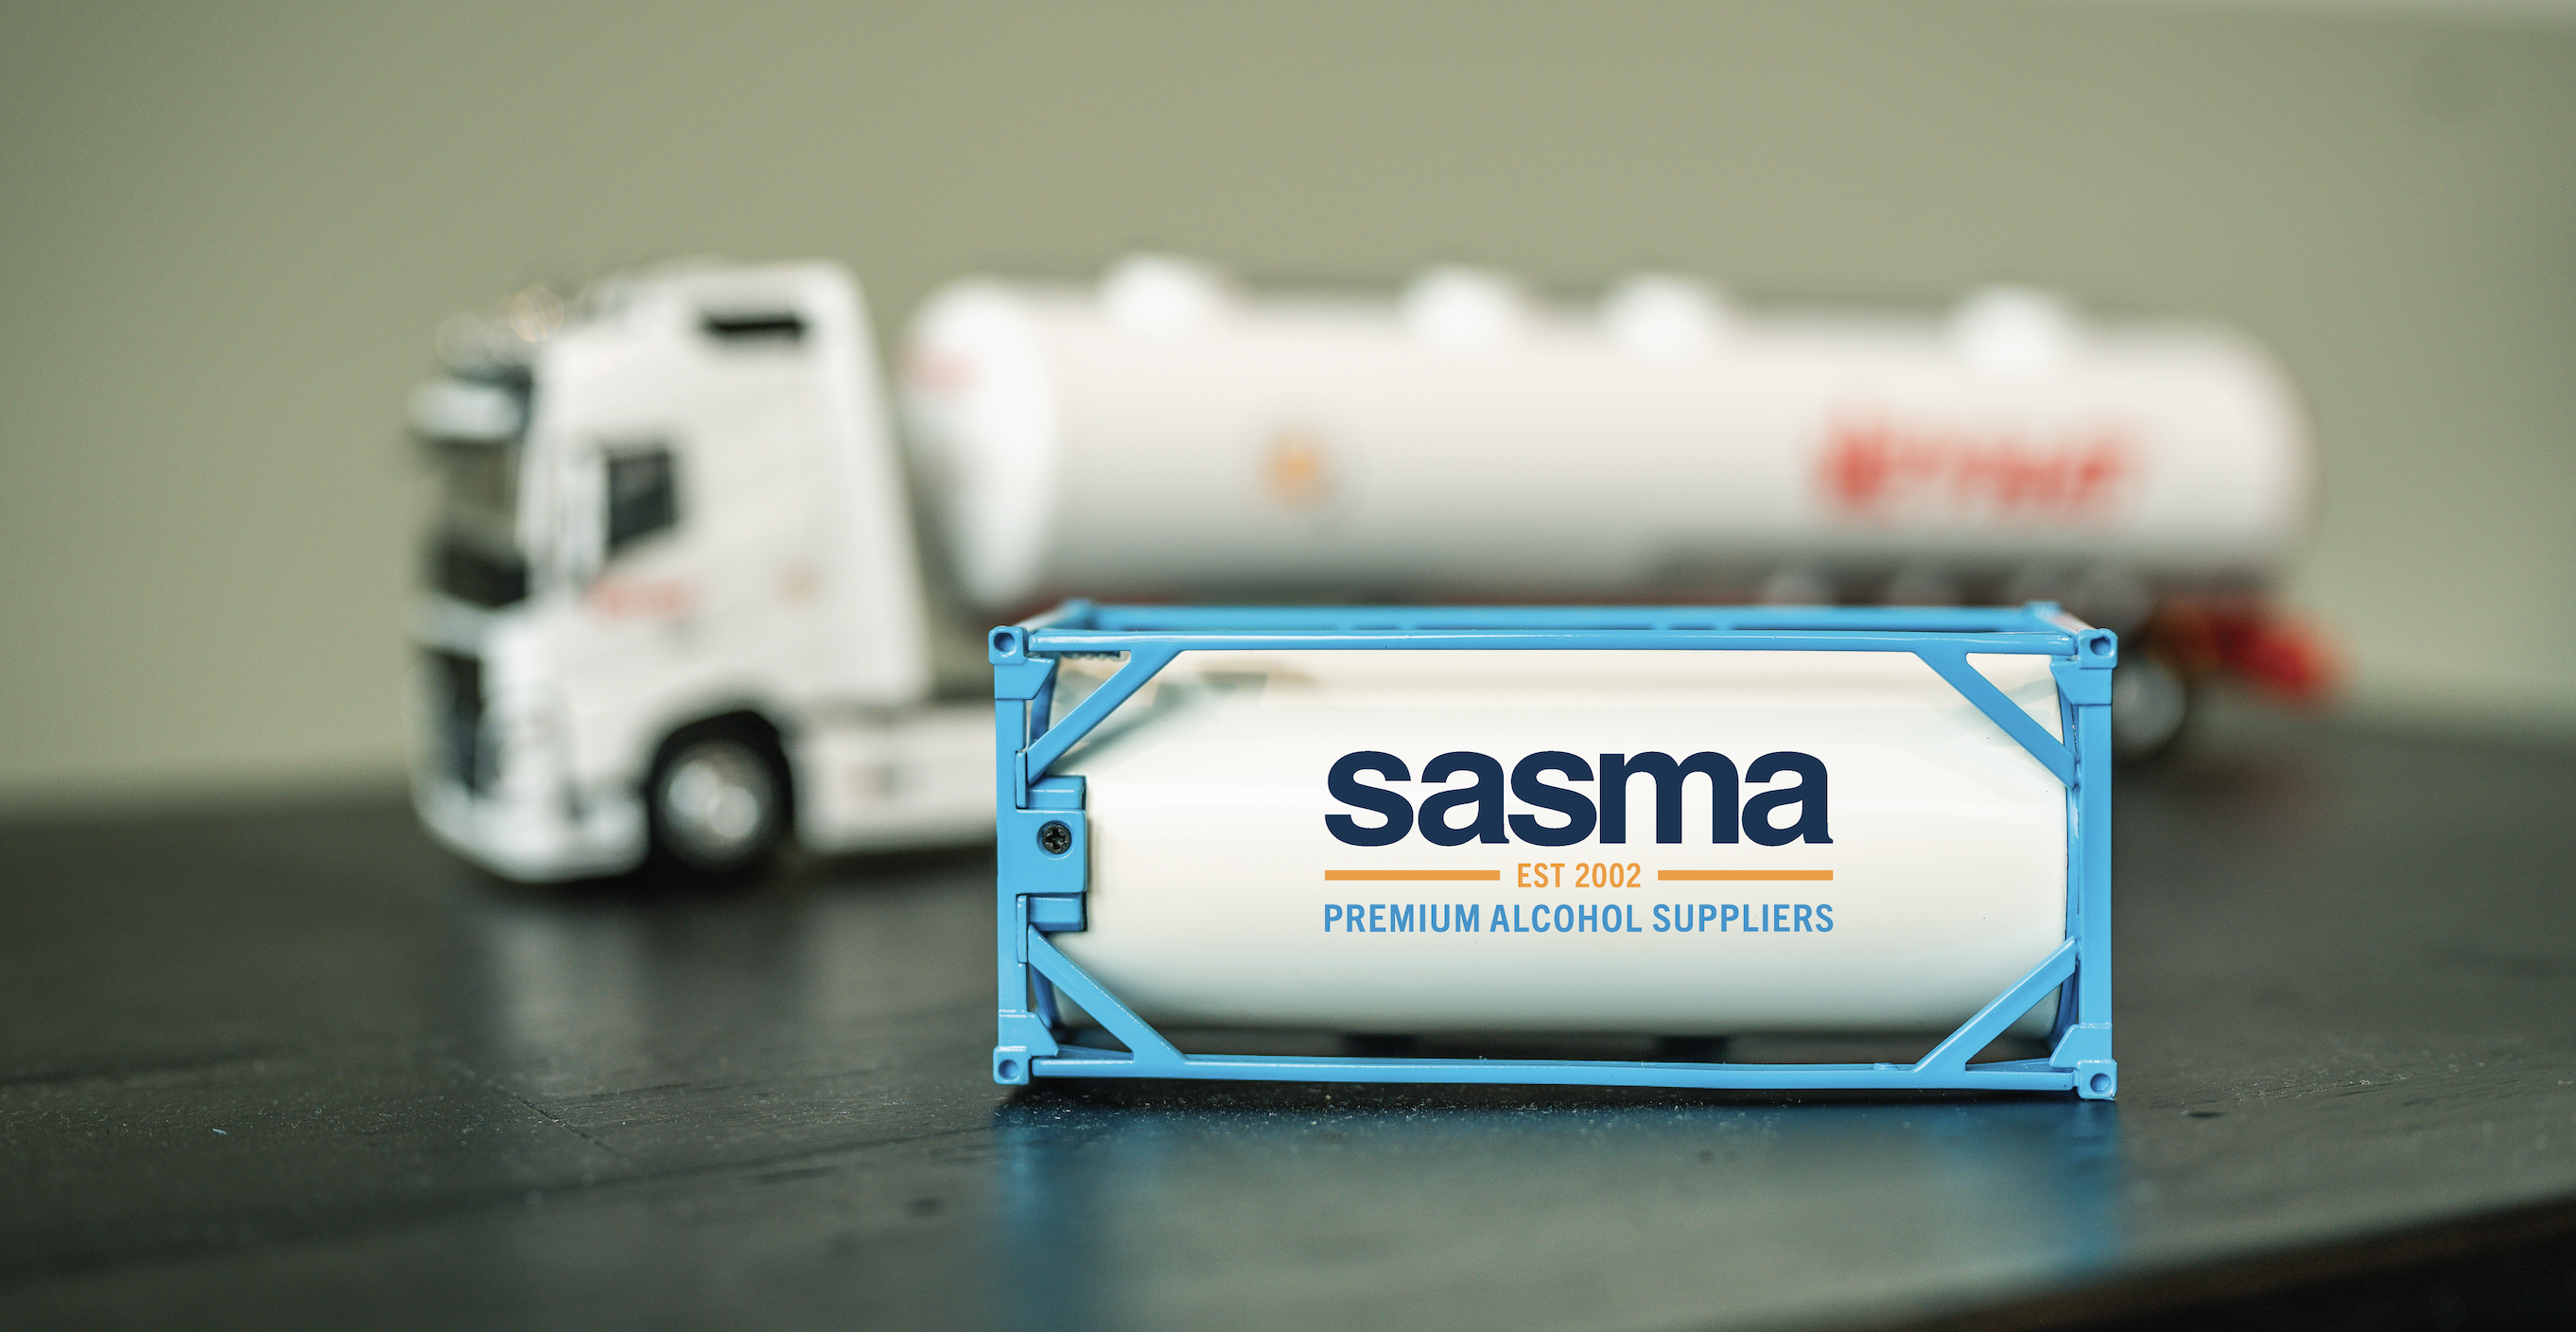 Sasma Alcohol ISO tank truck